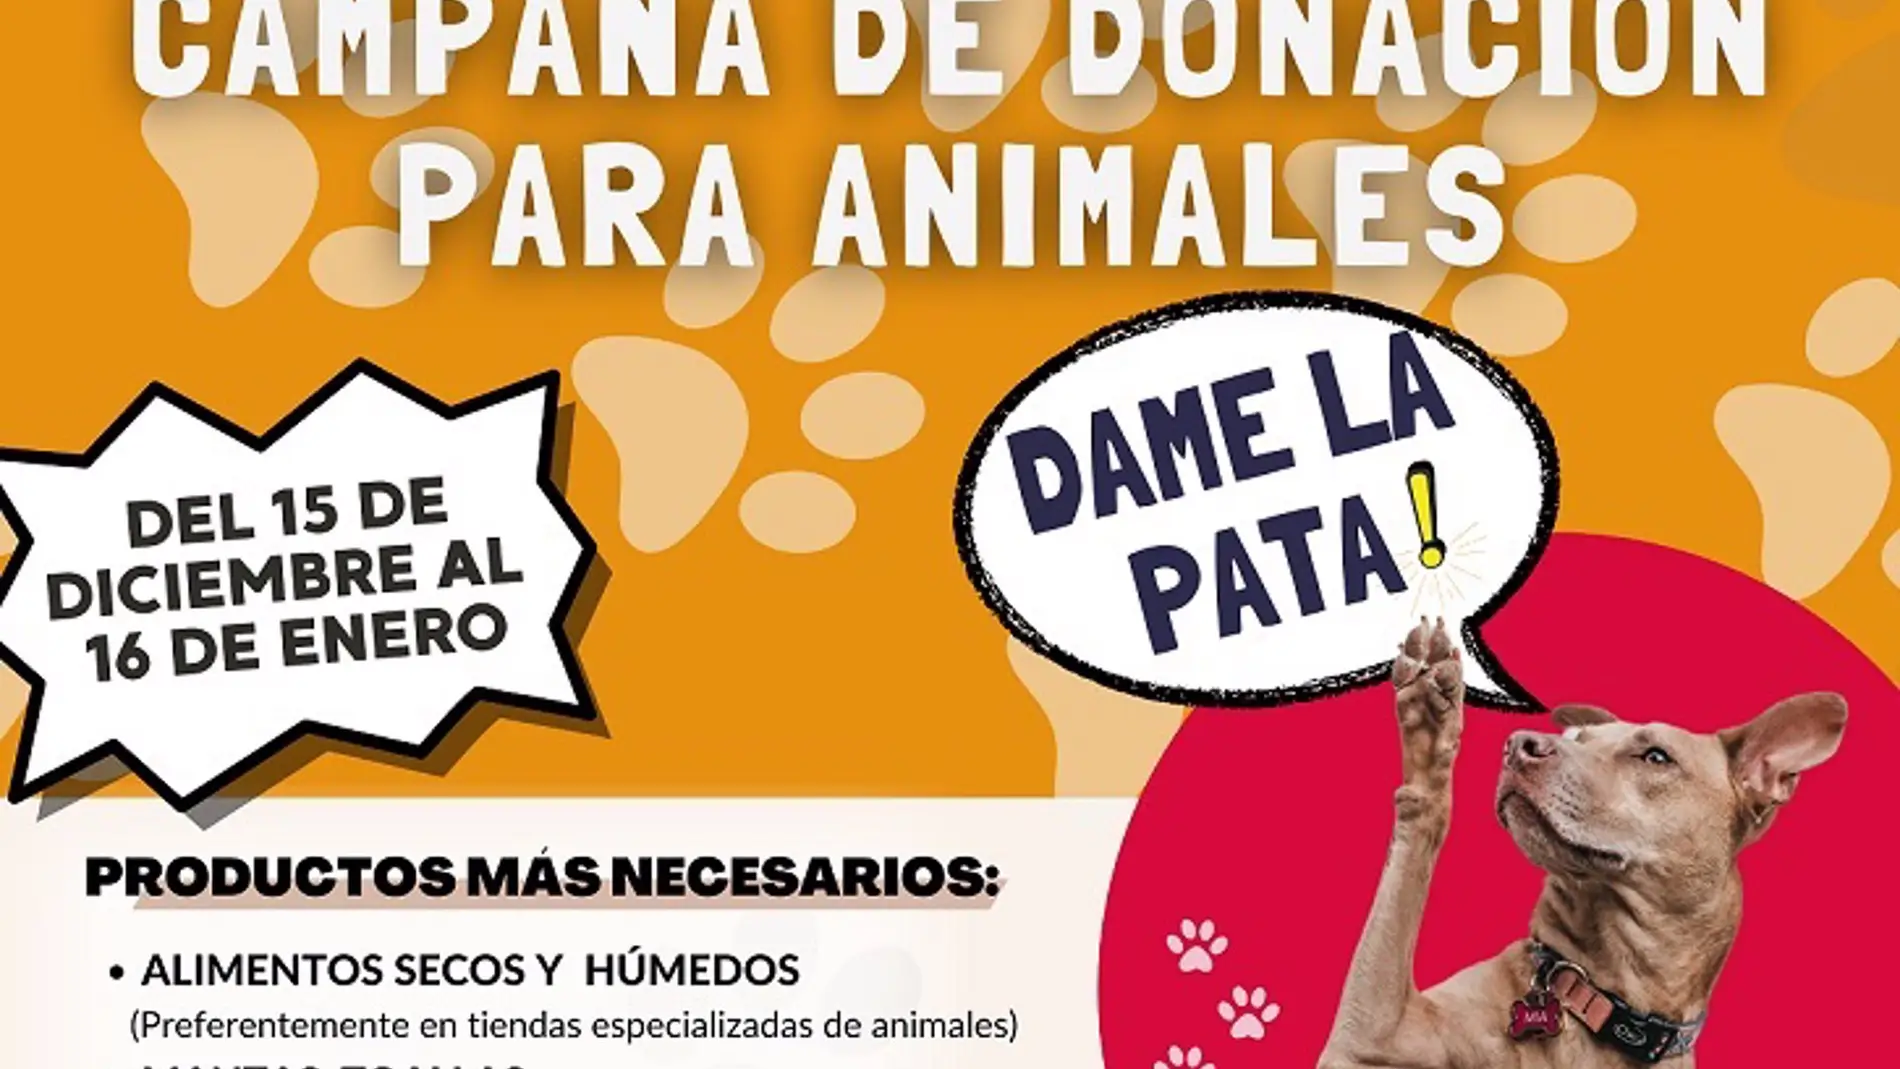 La Diputación de Badajoz lanza una campaña de donación para animales con 4 protectoras